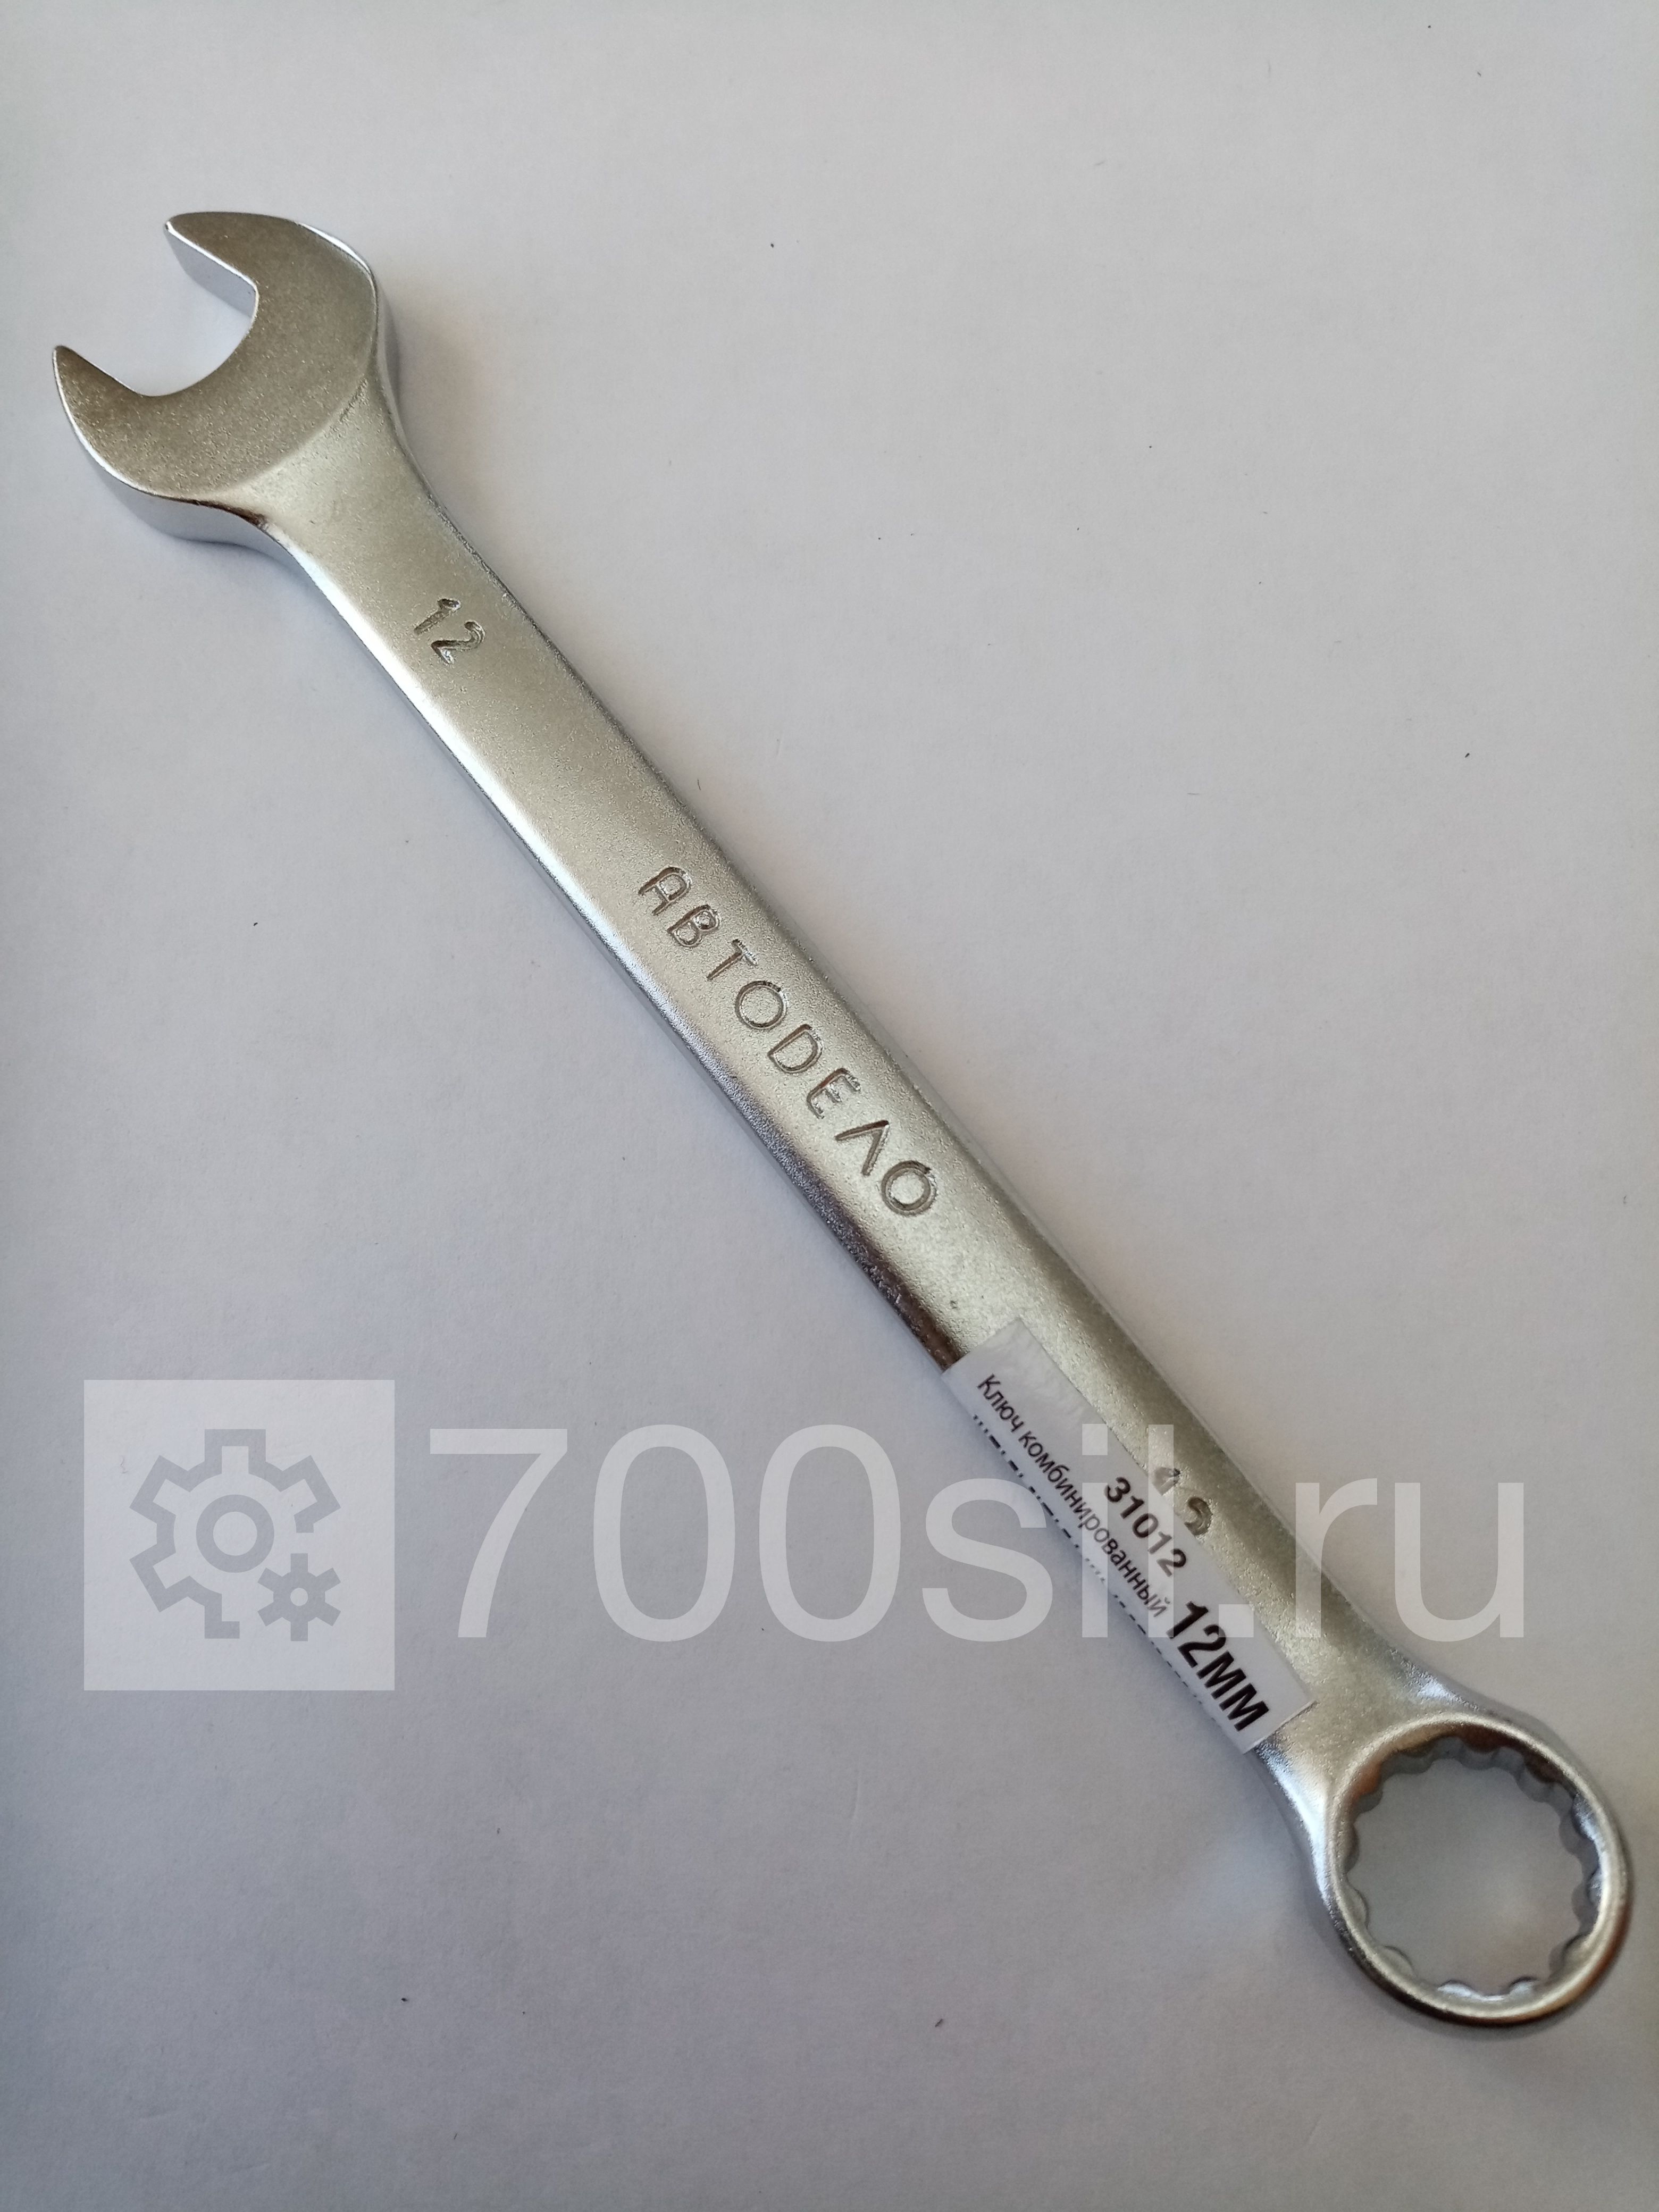 Ключ комбинированный 12 мм